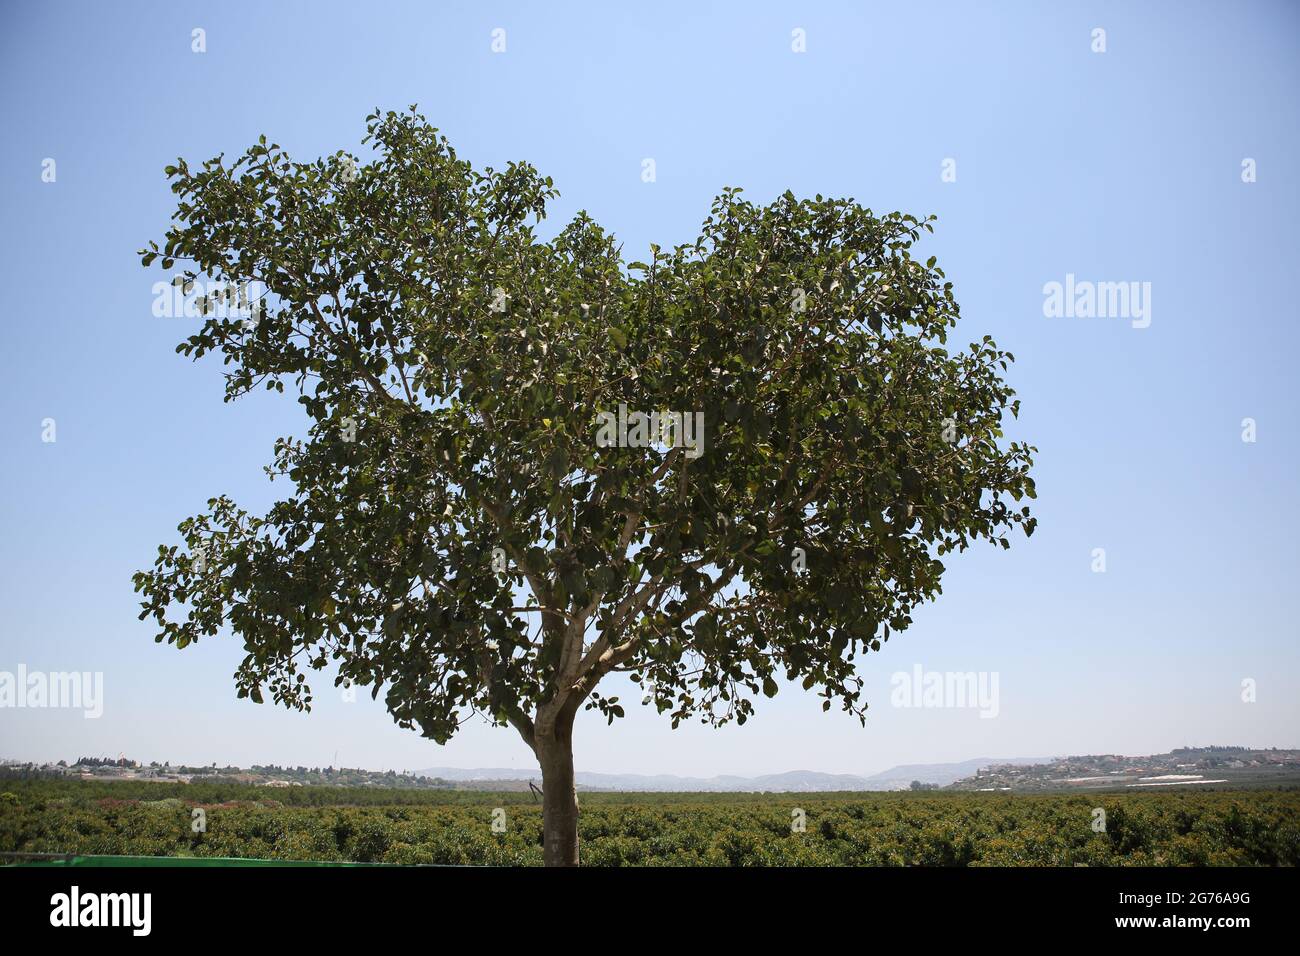 Maulbeerfeigenbaum, Ficus Sycomorus oder Feige - Maulbeere der Moraceae-Familie, auf einem solchen Baum saß biblische Zachäus, dahinter, Shephelah und Samaria Hills. Stockfoto